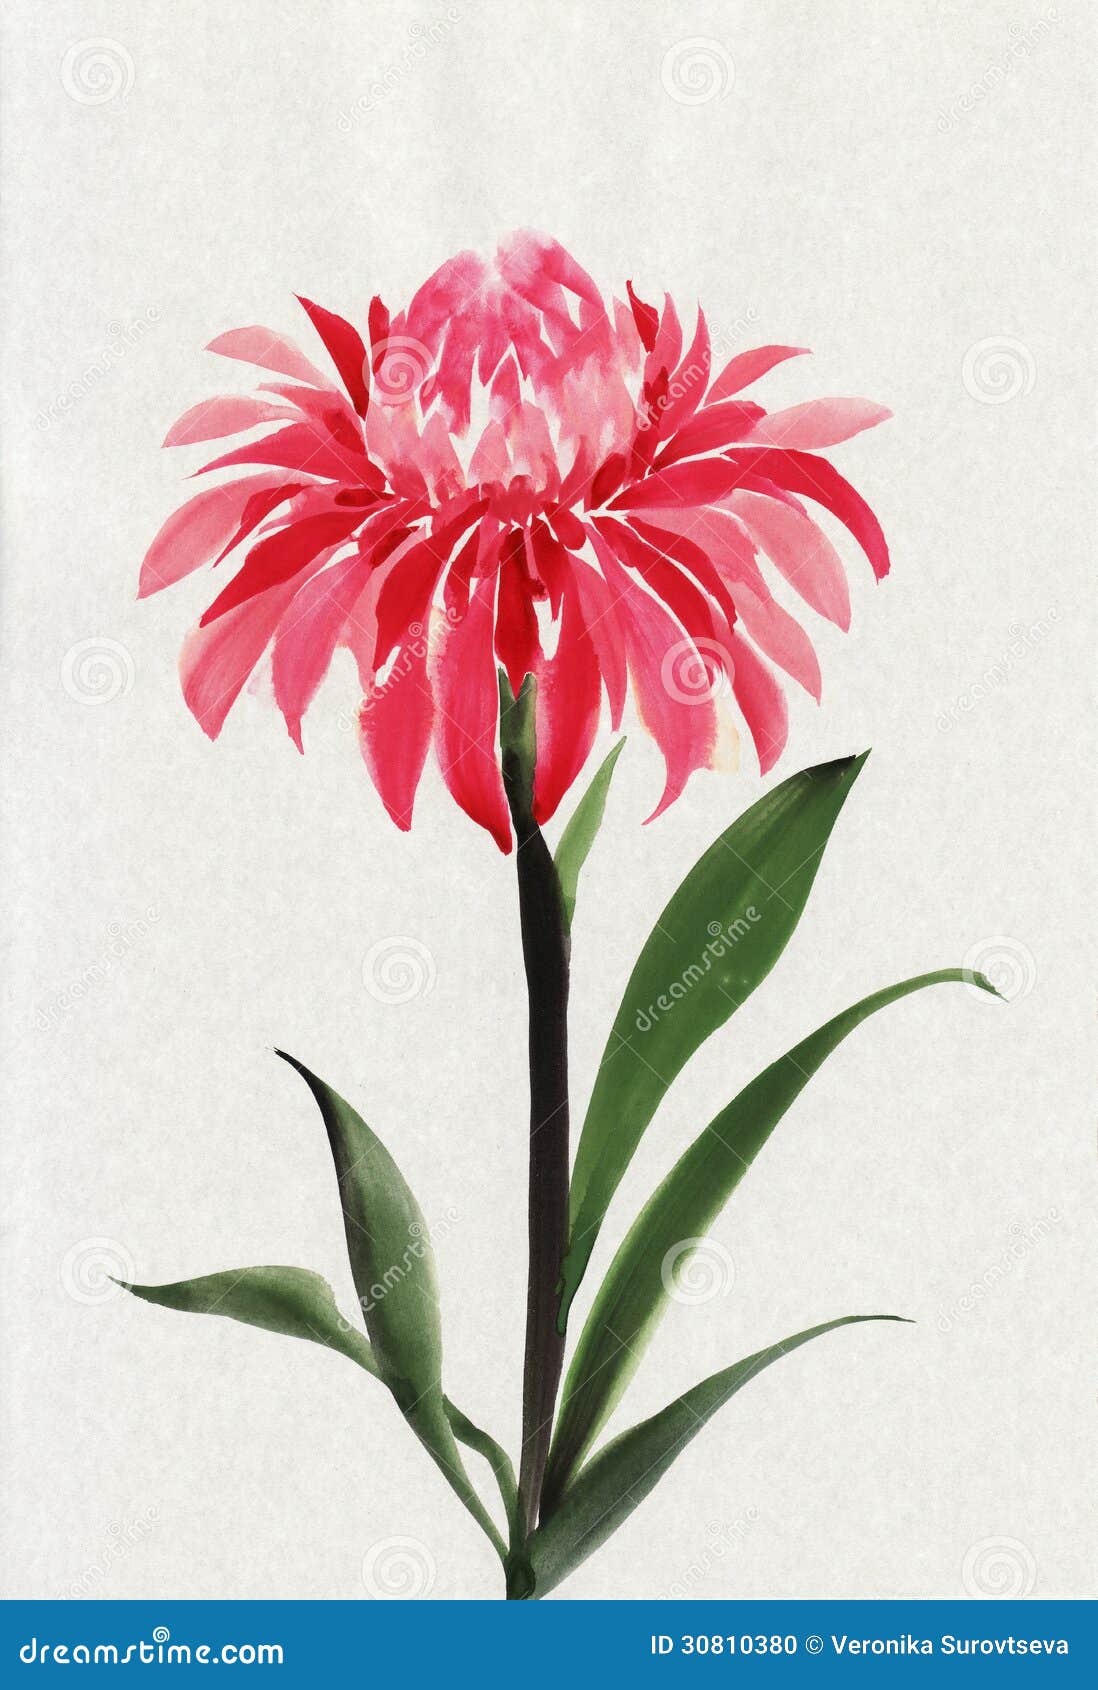 Red flower stock illustration. Illustration of japanese - 30810380